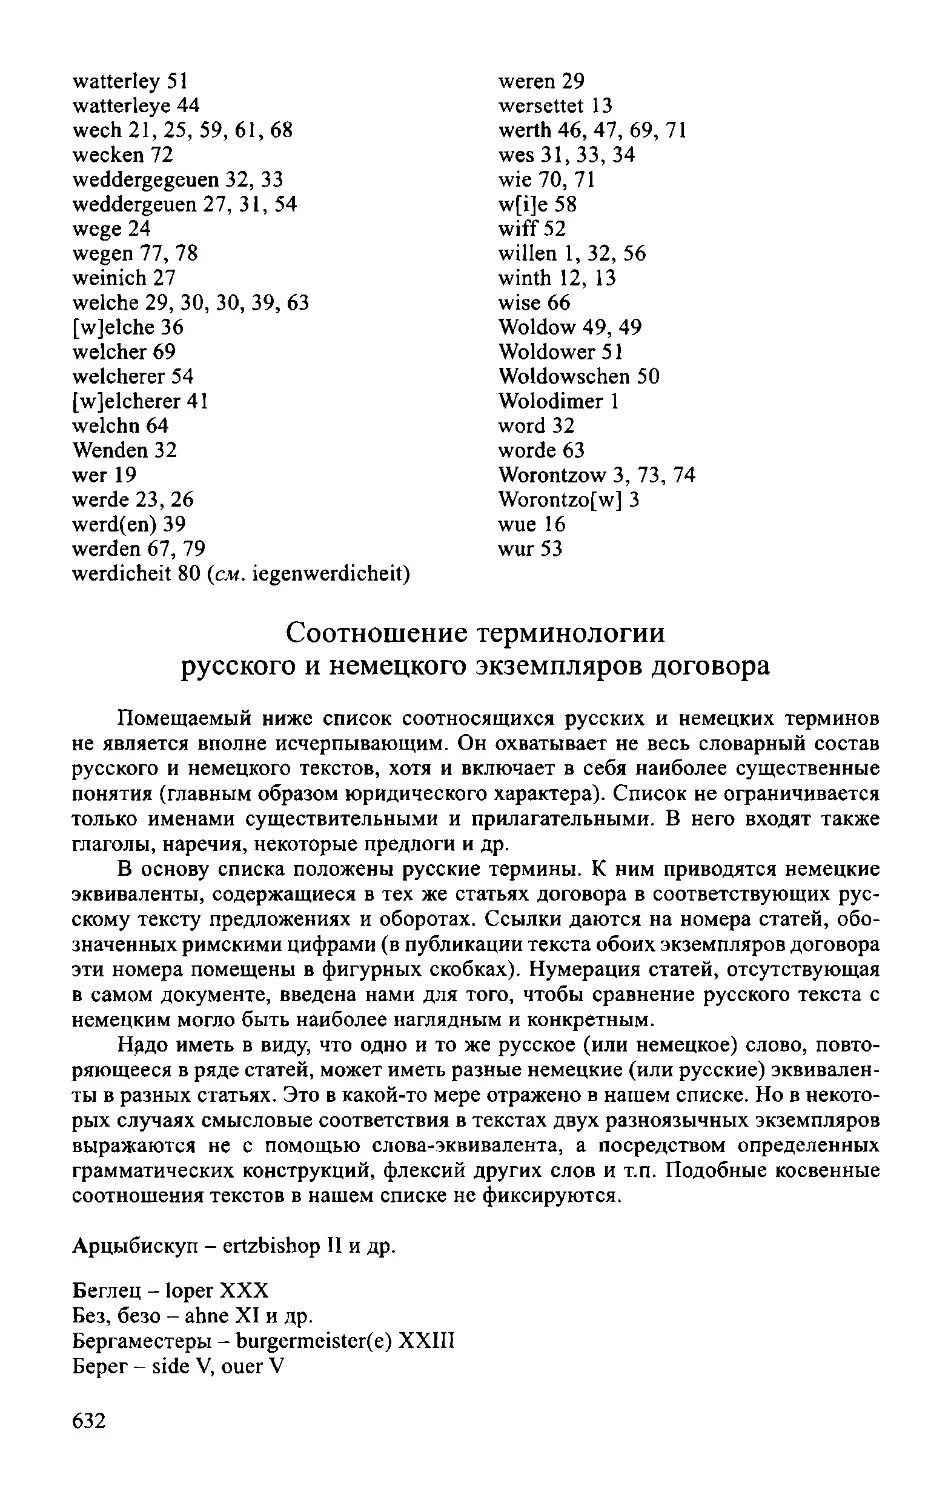 ﻿Соотношение терминологии русского и немецкого экземпляров договор